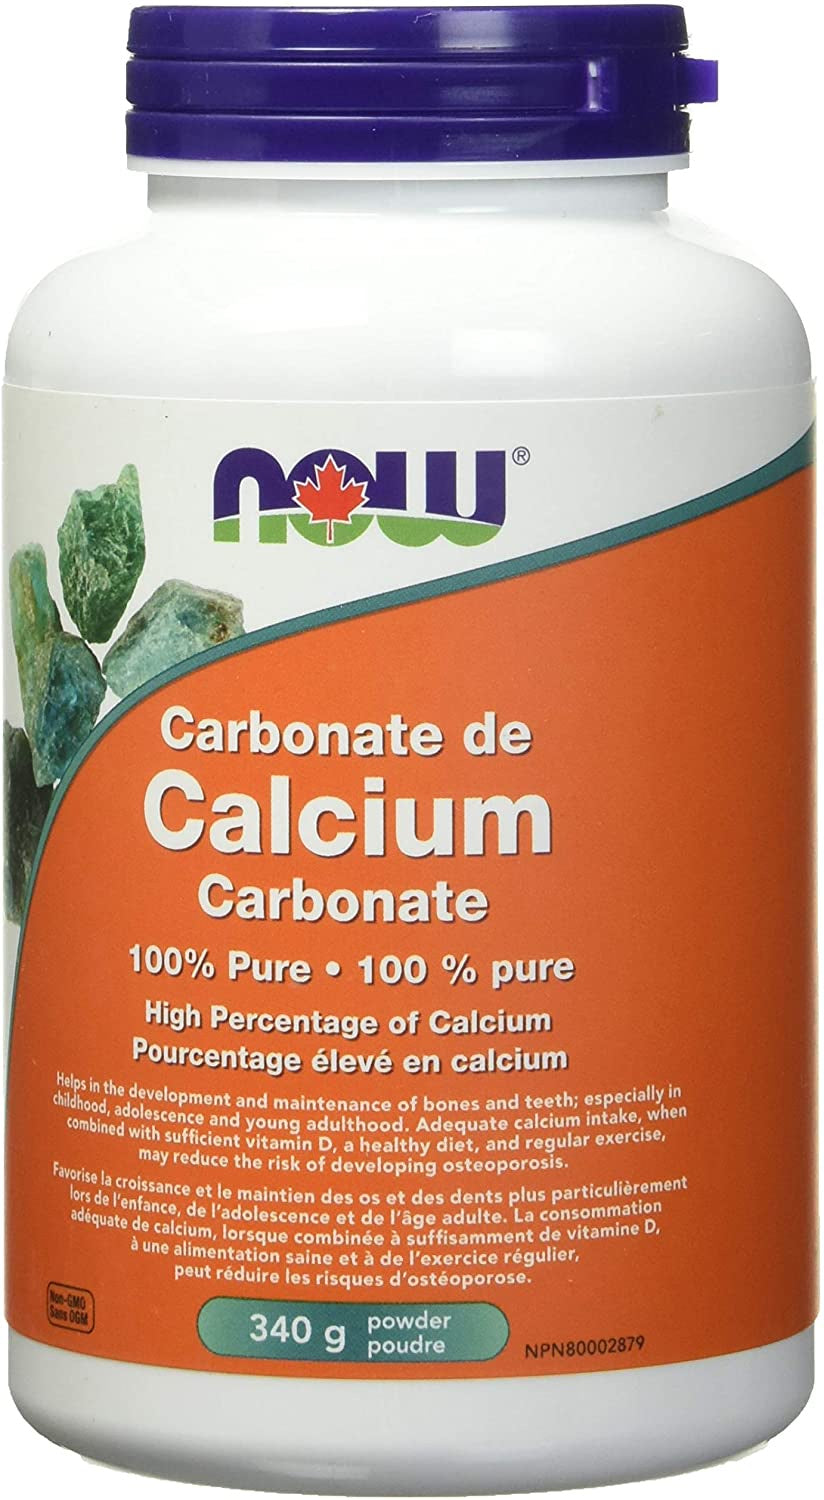 Now - Calcium Carbonate Powder (340g)